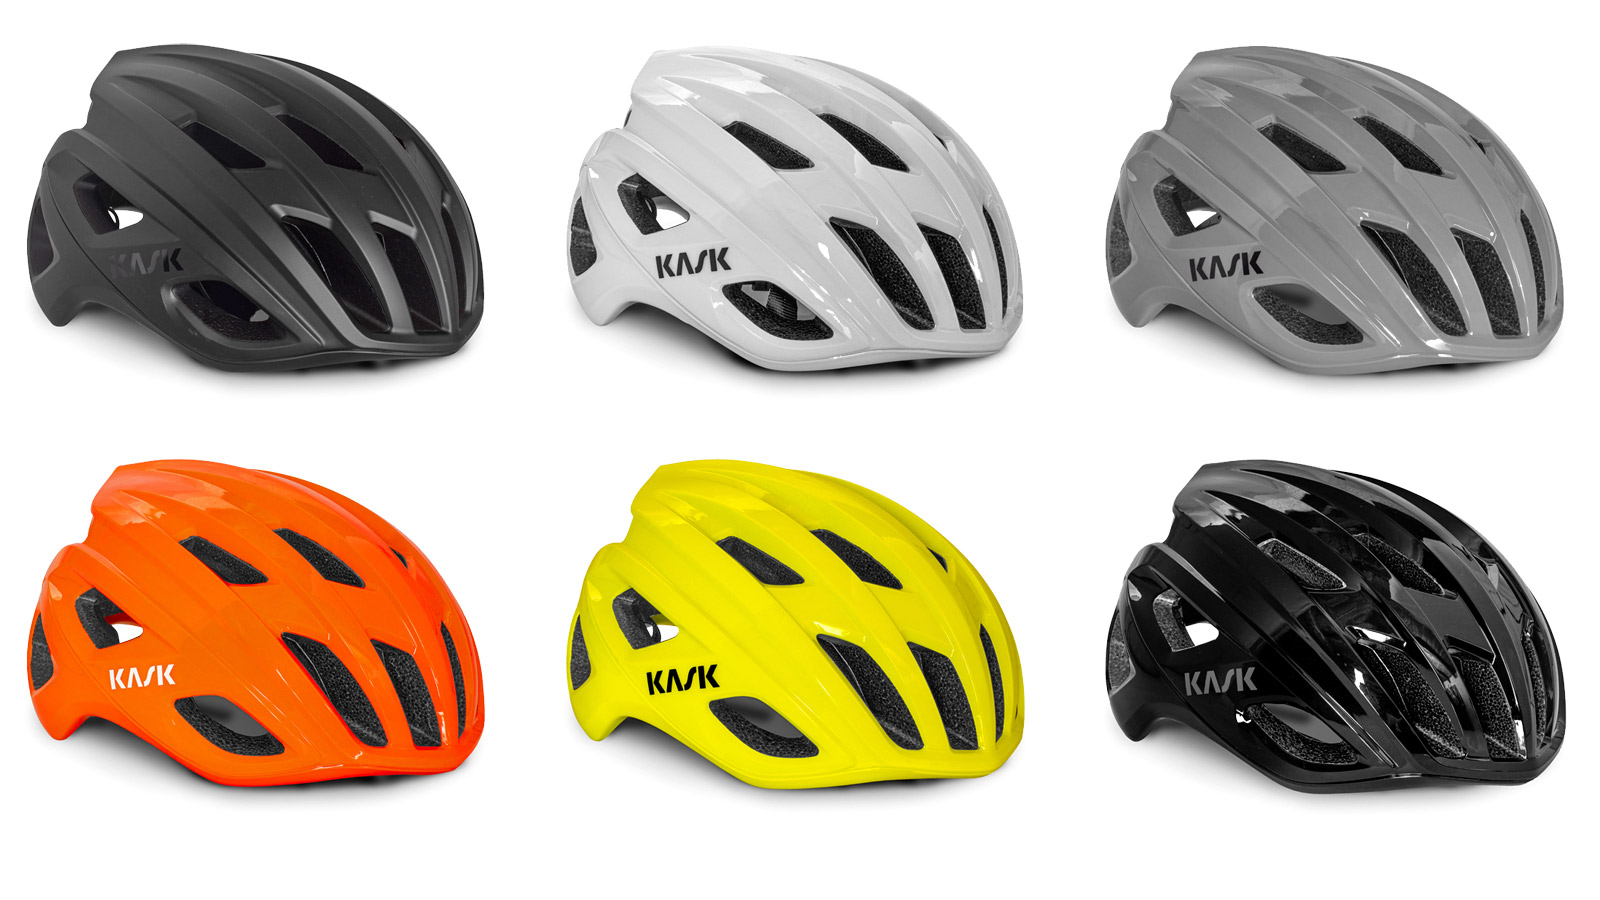 Kask-Mojito3-road-helmet_updated-redesigned-lightweight-fully-vented-semi-aero-road-bike-helmet_colors (2).jpg